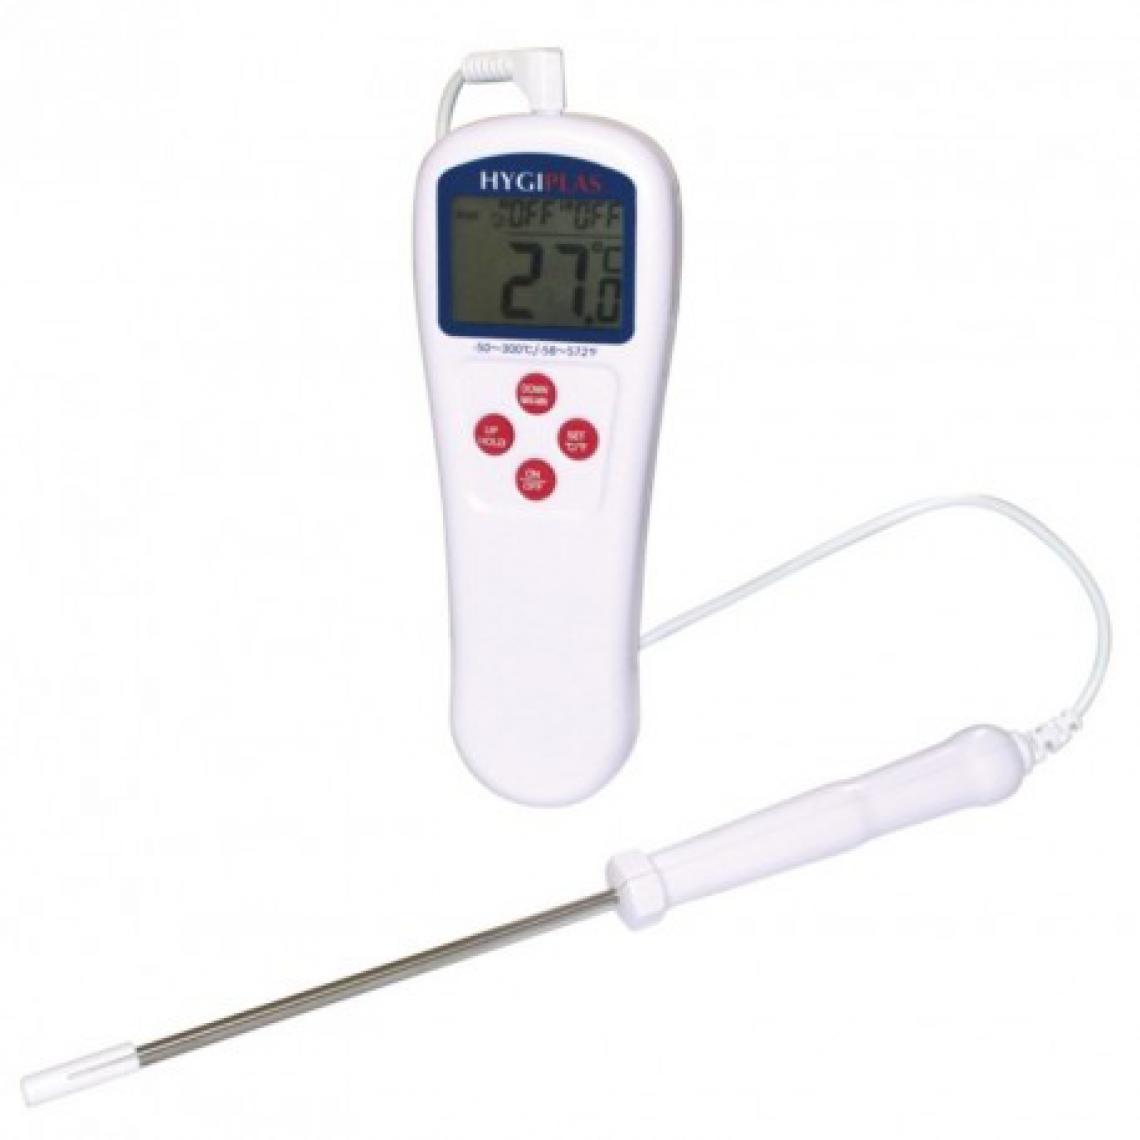 Materiel Chr Pro - Thermomètre professionnel digital Catertherm Hygiplas - - Appareils de mesure